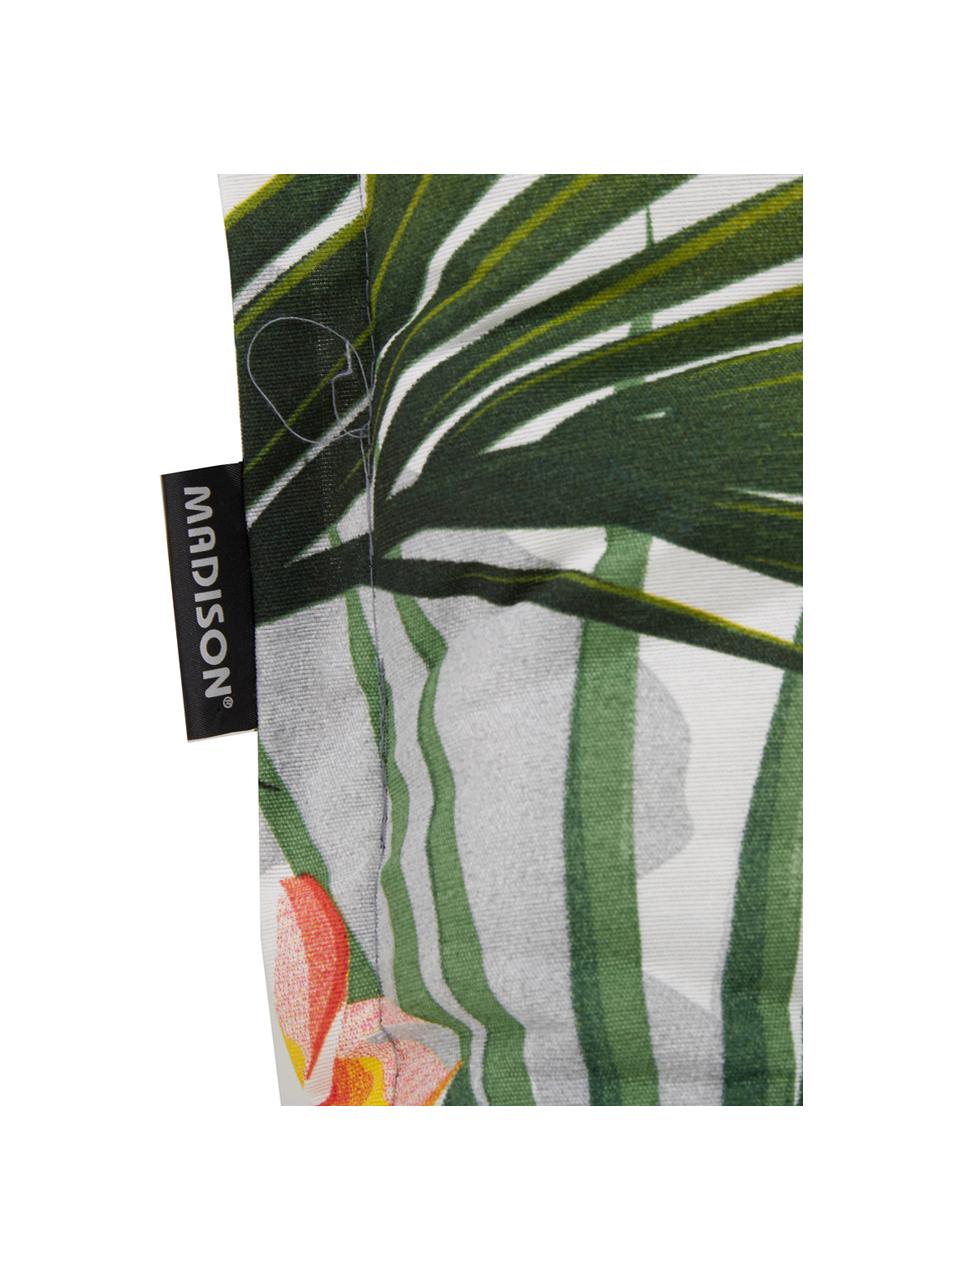 Hochlehner-Stuhlauflage Flower mit tropischem Print, 50% Baumwolle, 45% Polyester,
5% andere Fasern, Mehrfarbig, 50 x 123 cm